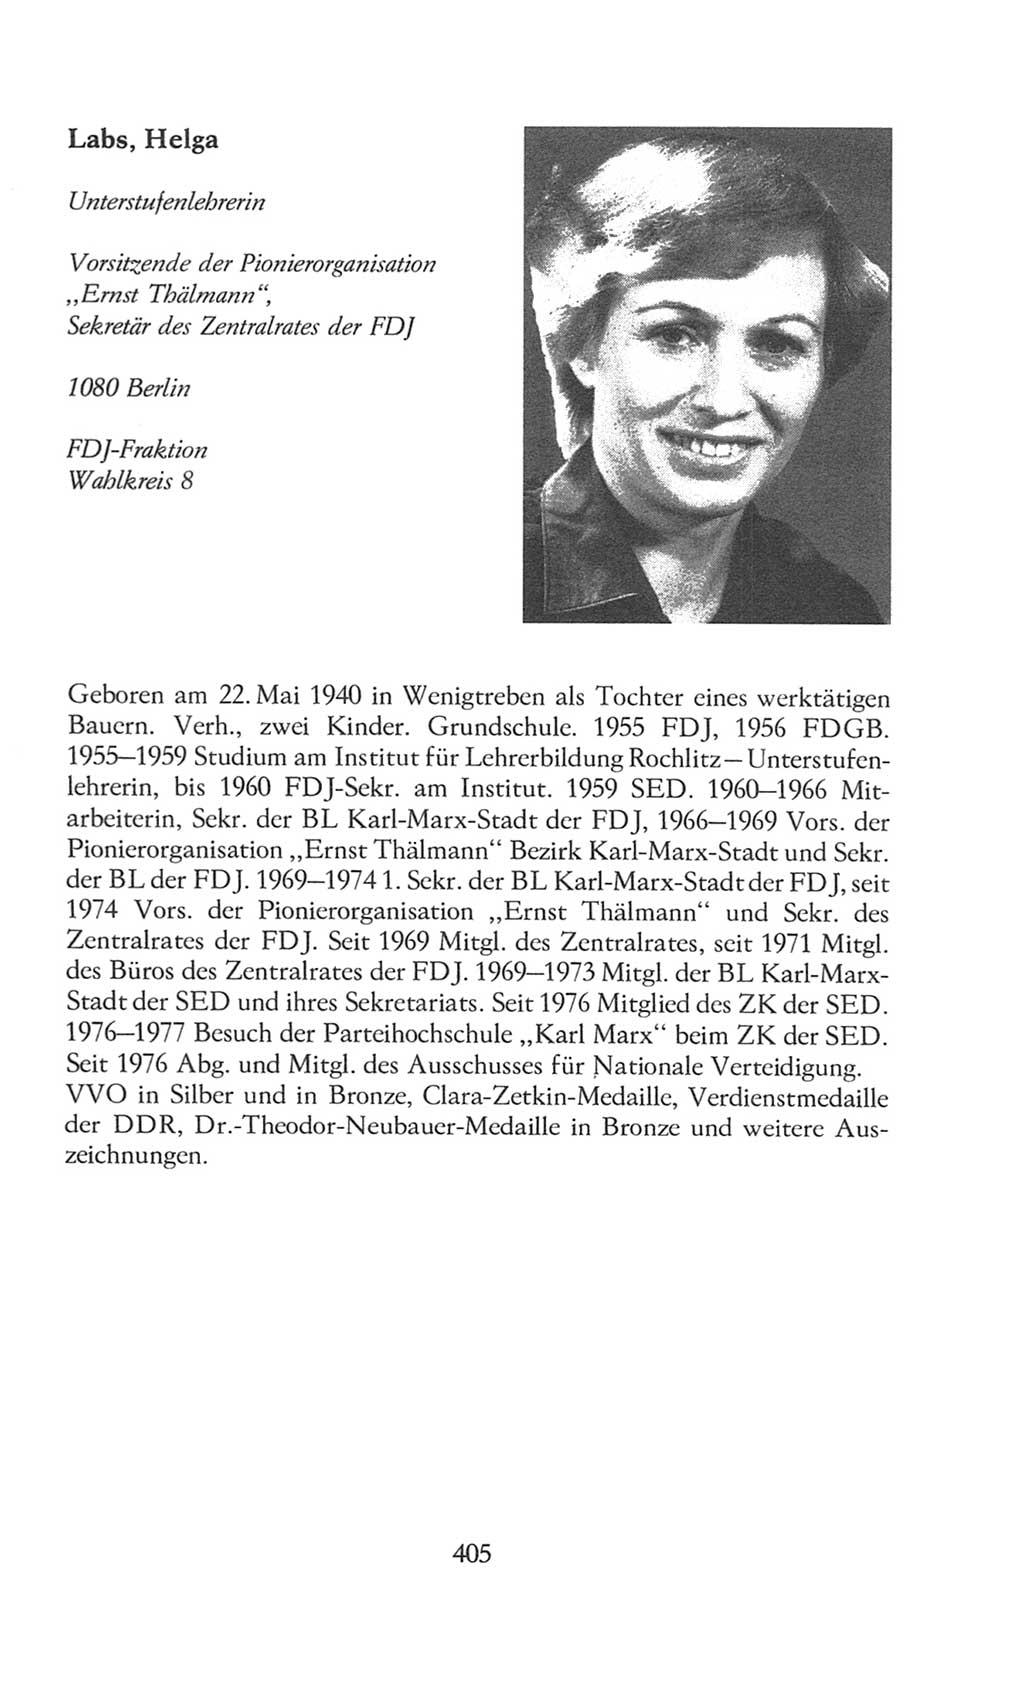 Volkskammer (VK) der Deutschen Demokratischen Republik (DDR), 8. Wahlperiode 1981-1986, Seite 405 (VK. DDR 8. WP. 1981-1986, S. 405)